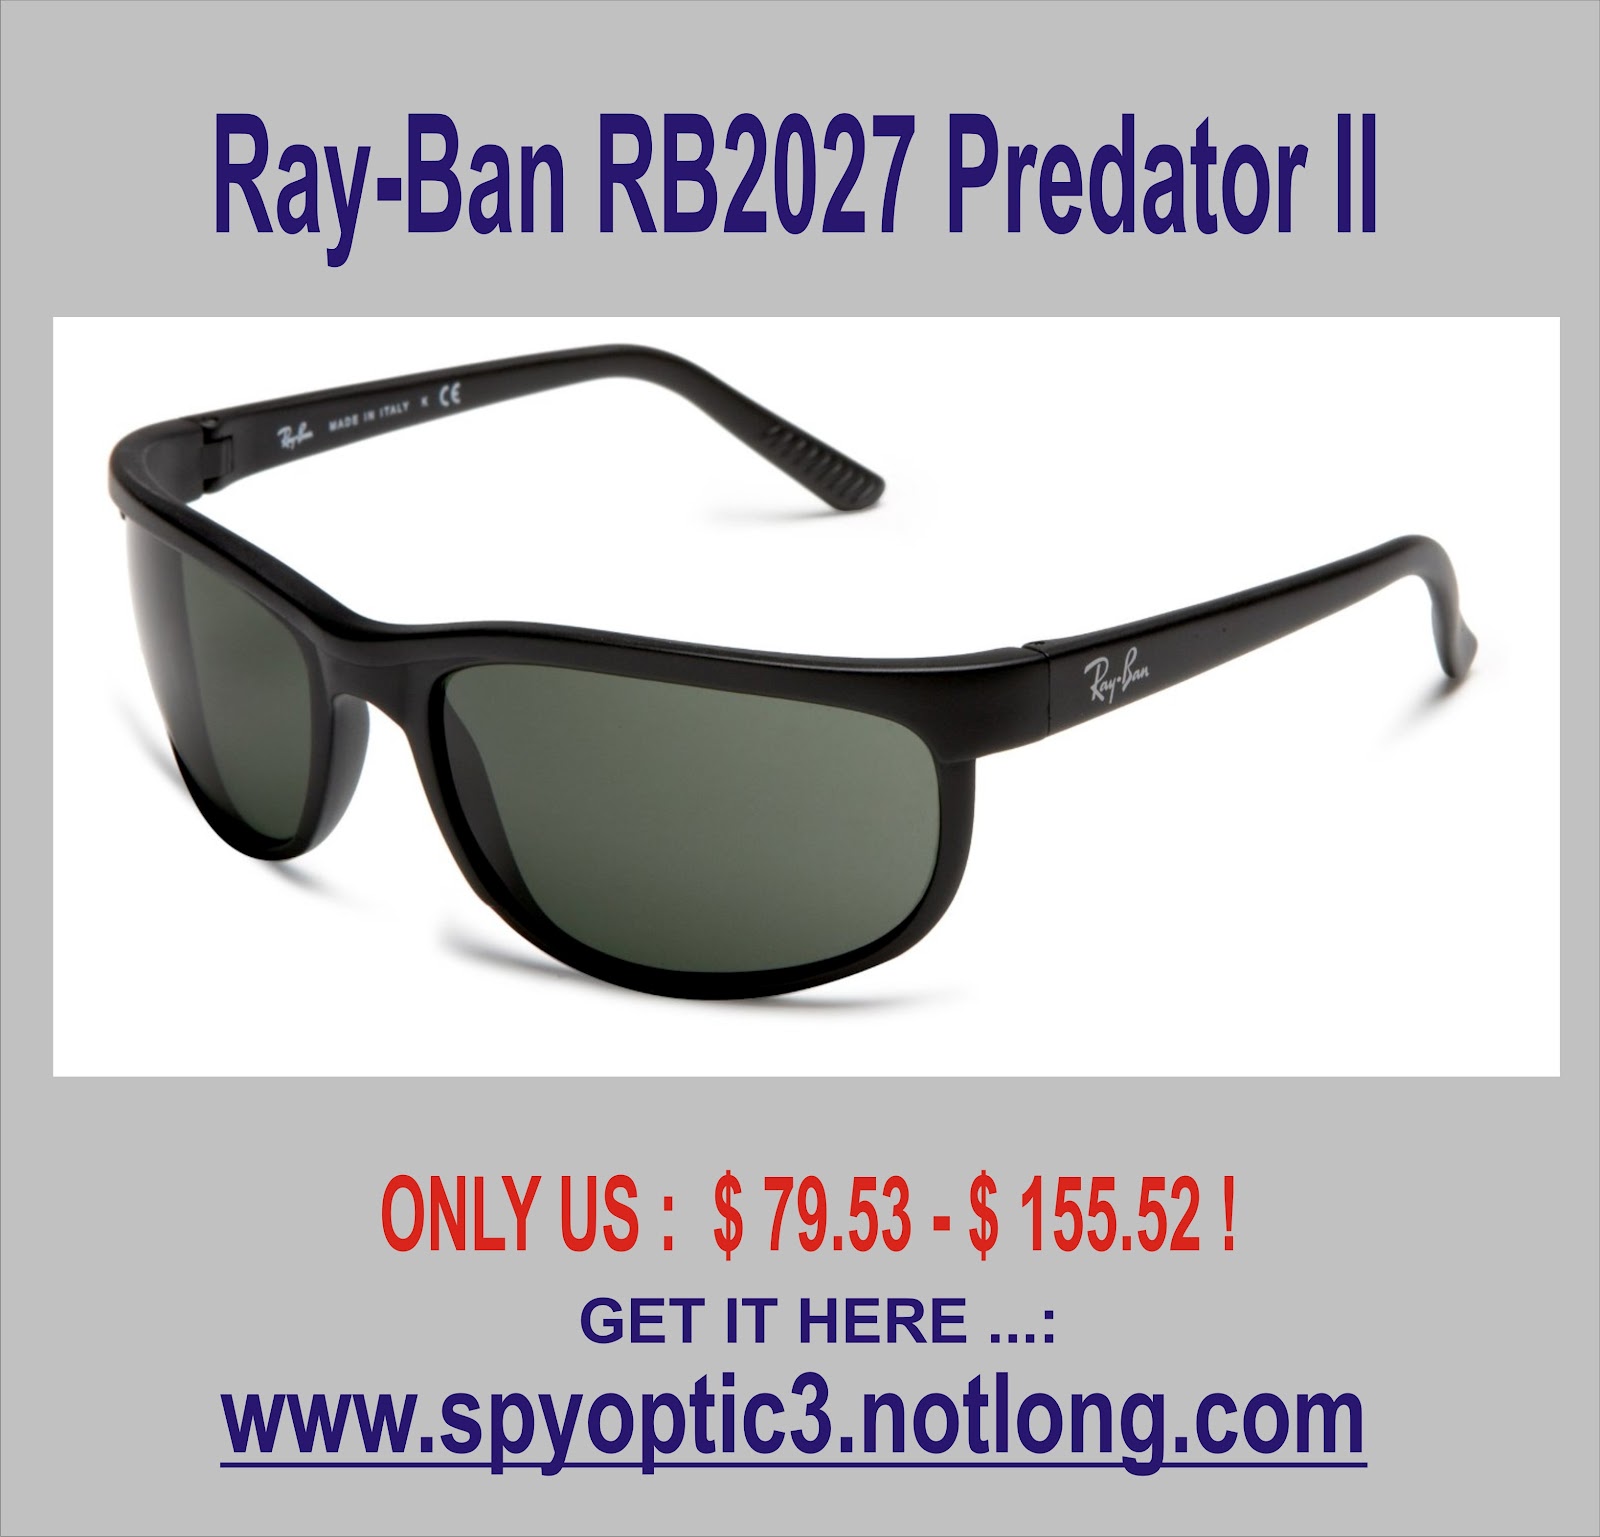 http://4.bp.blogspot.com/-VaLOuXsPVgs/UED2G66AfyI/AAAAAAAABKQ/GGKL-Ulrq3c/s1600/Ray-Ban+RB2027+Predator+II+Sunglasses-+62mm.jpg